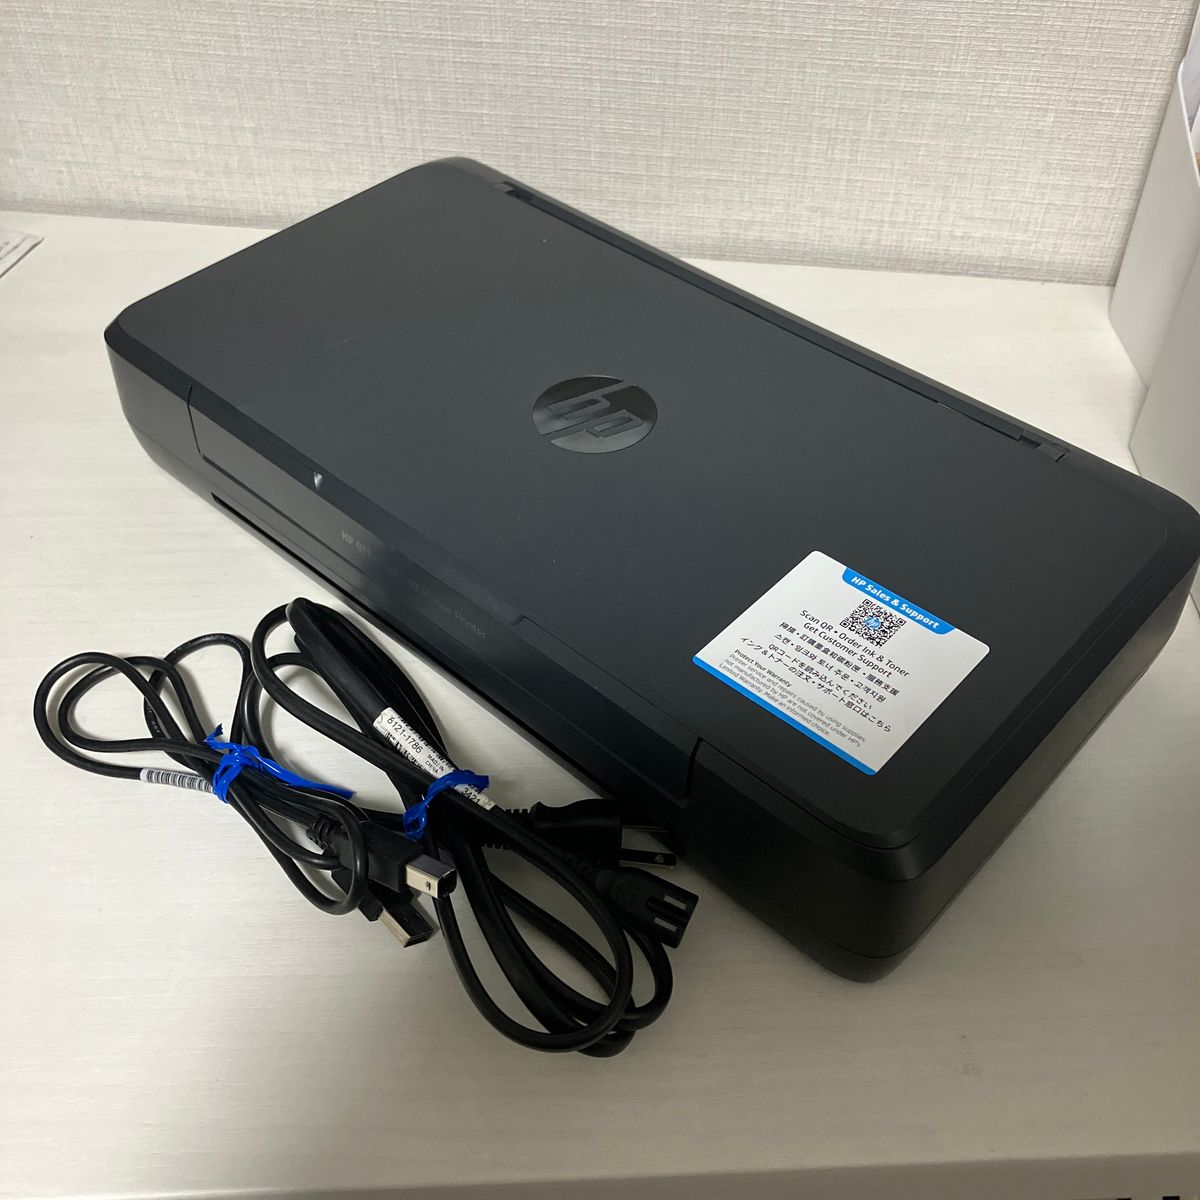 【新品インク付】モバイル プリンター OfficeJet 200 Mobile 黒 